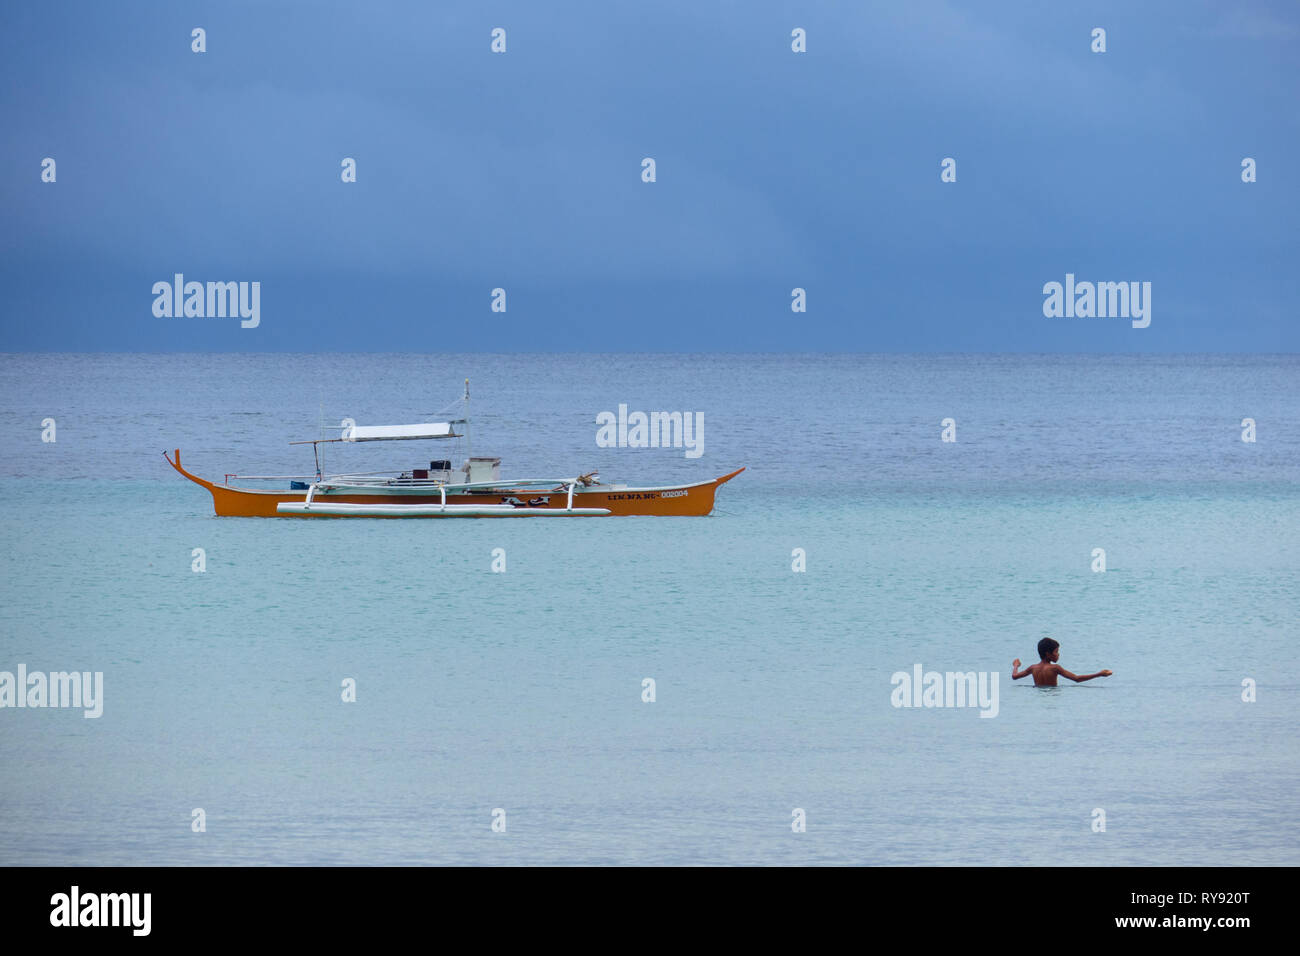 Filipino Junge Swimmingpool im tropischen Meer in der Nähe von Tour Boot - Diapila Strand, Palawan - Philippinen Stockfoto